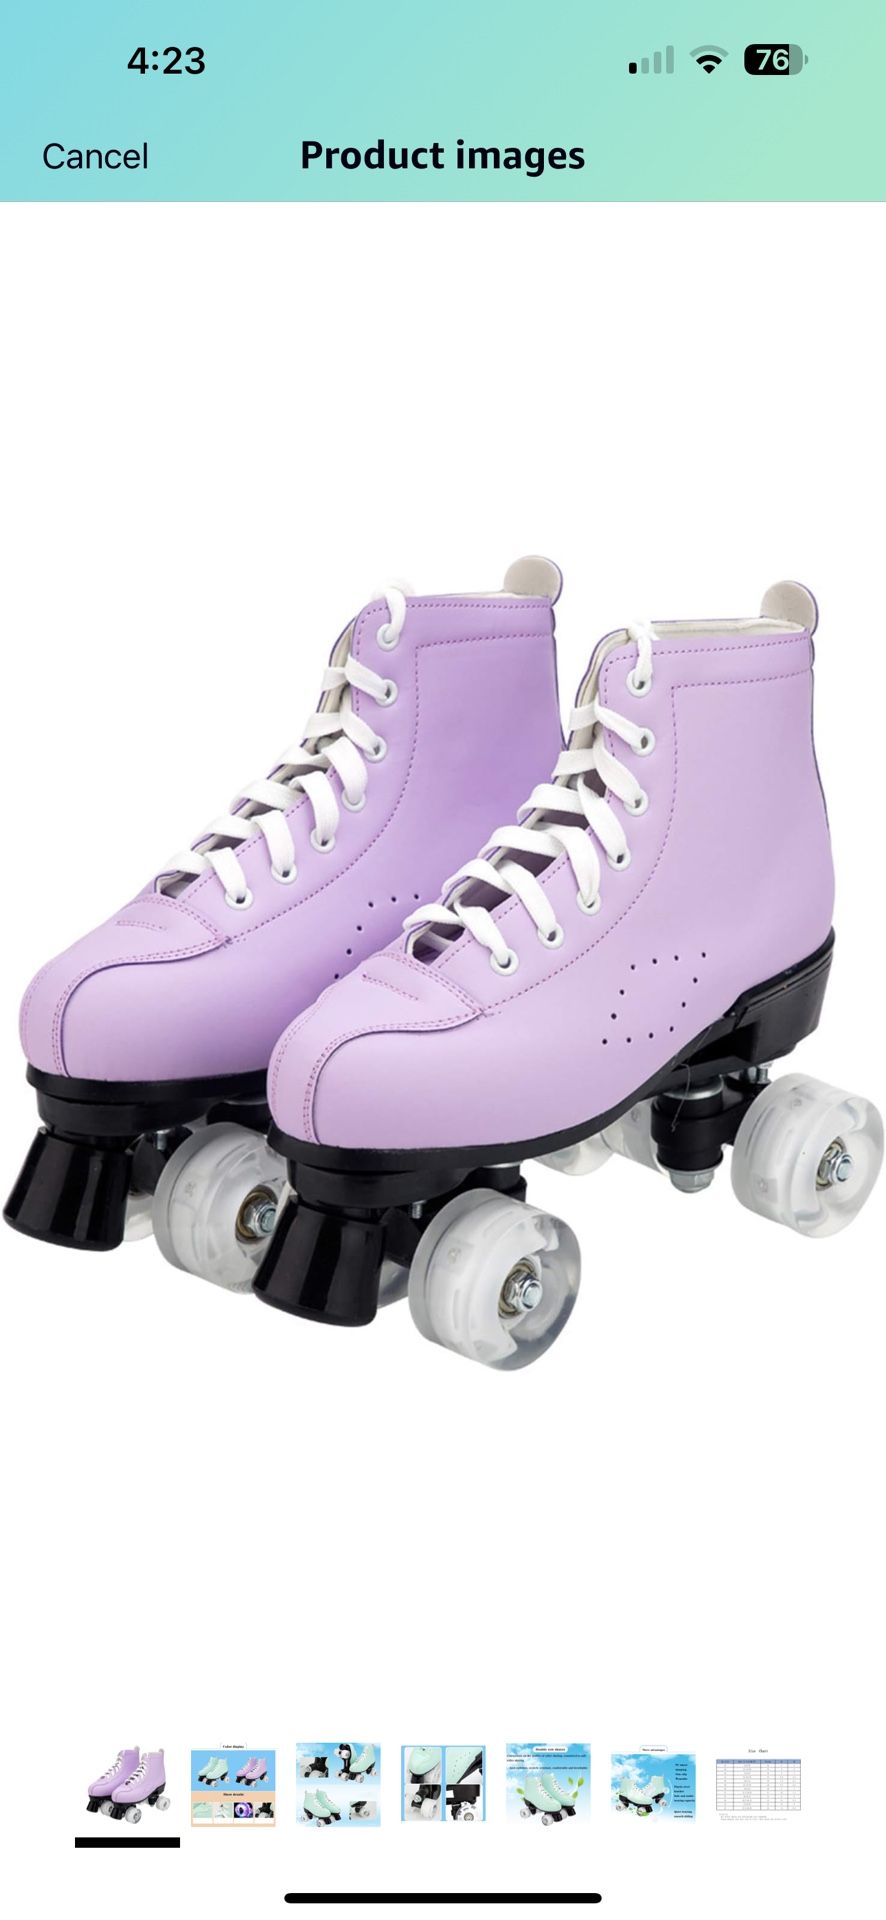 Brand New Roller Skates